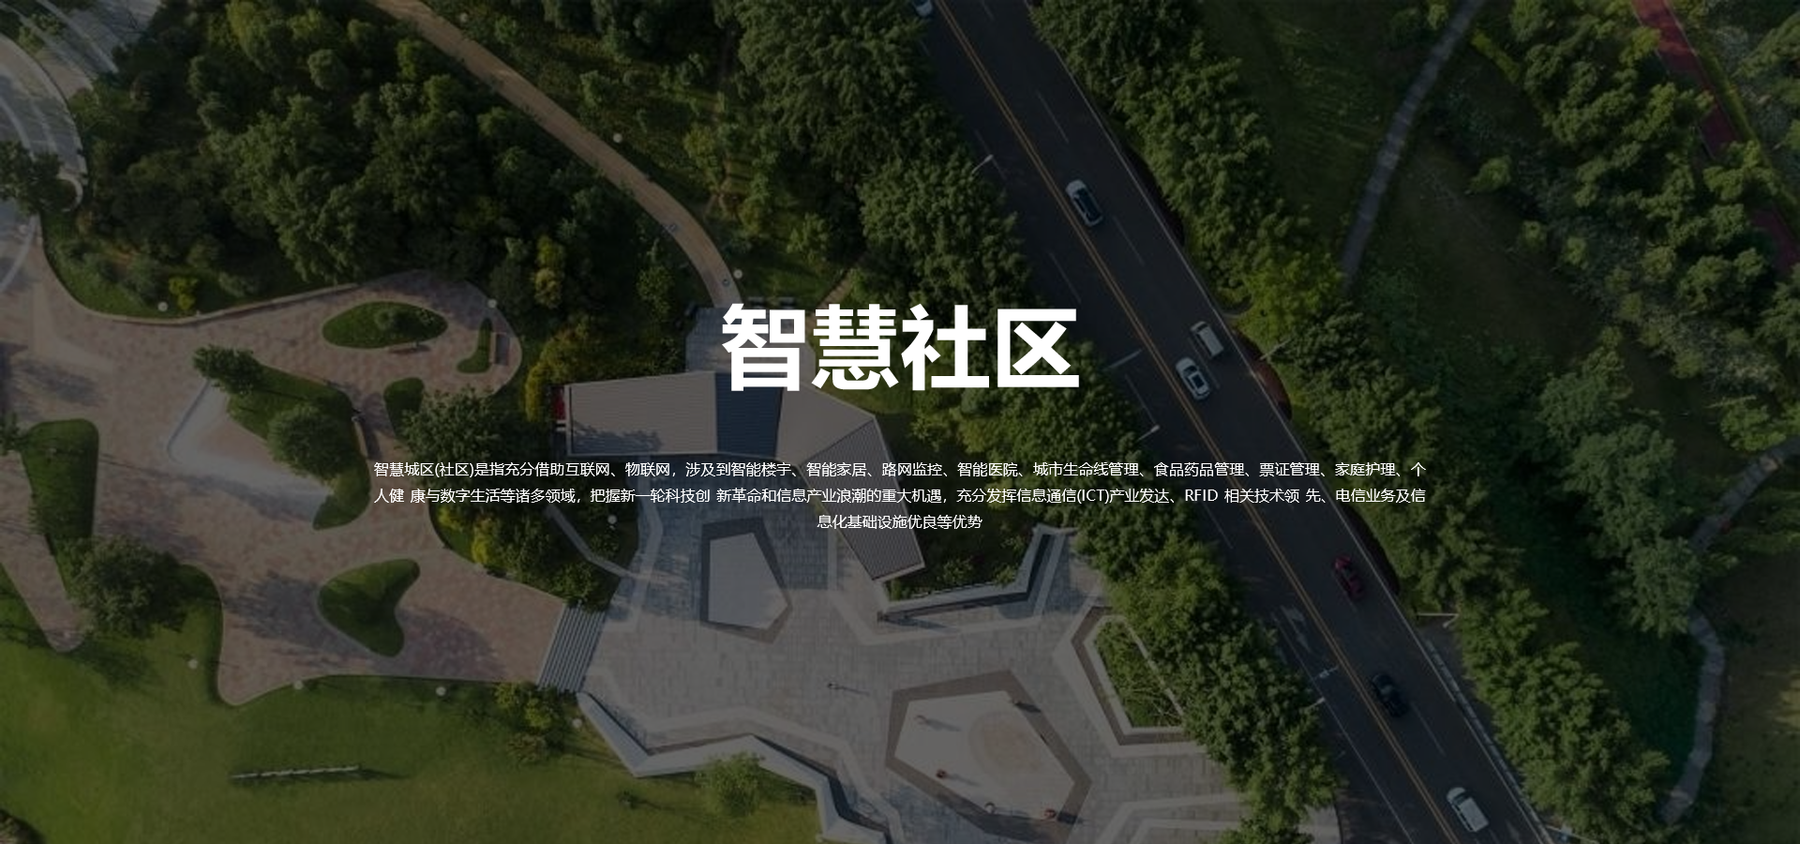 Z6尊龙·凯时(中国)-官方网站_首页237